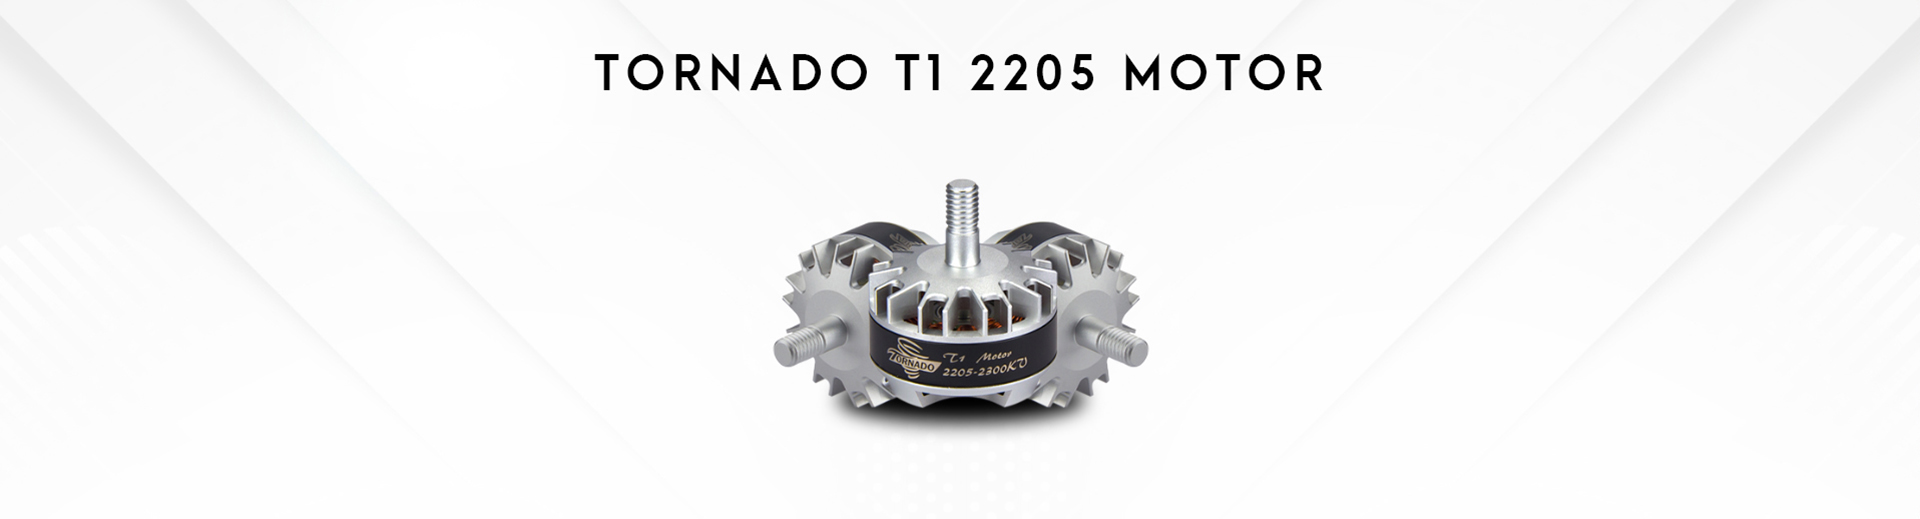 Tornado T1 2205 Motor